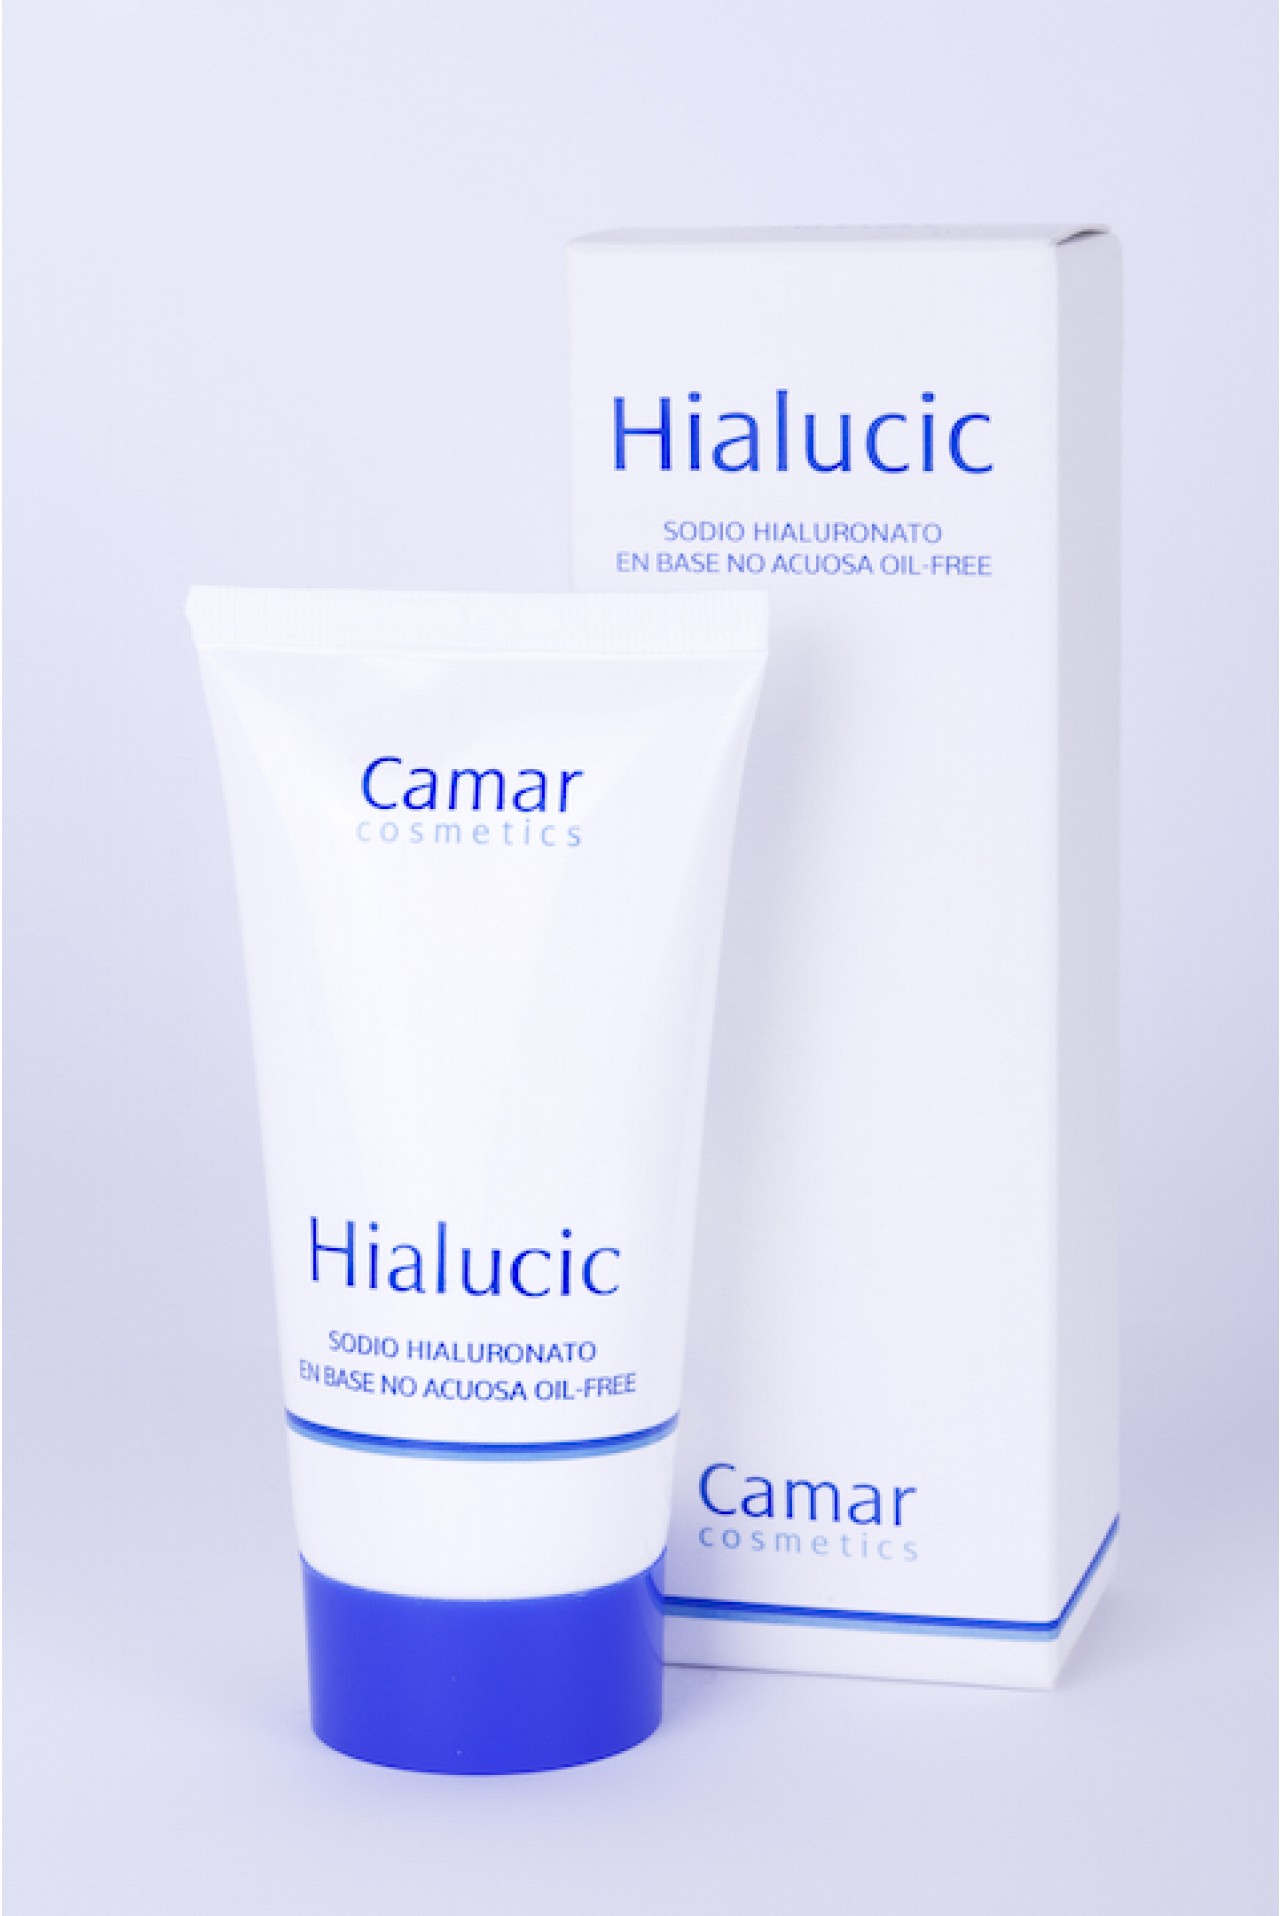 Contrapartida Habitual Saltar Hialucic 50ml | Crema de Ácido Hialurónico Puro